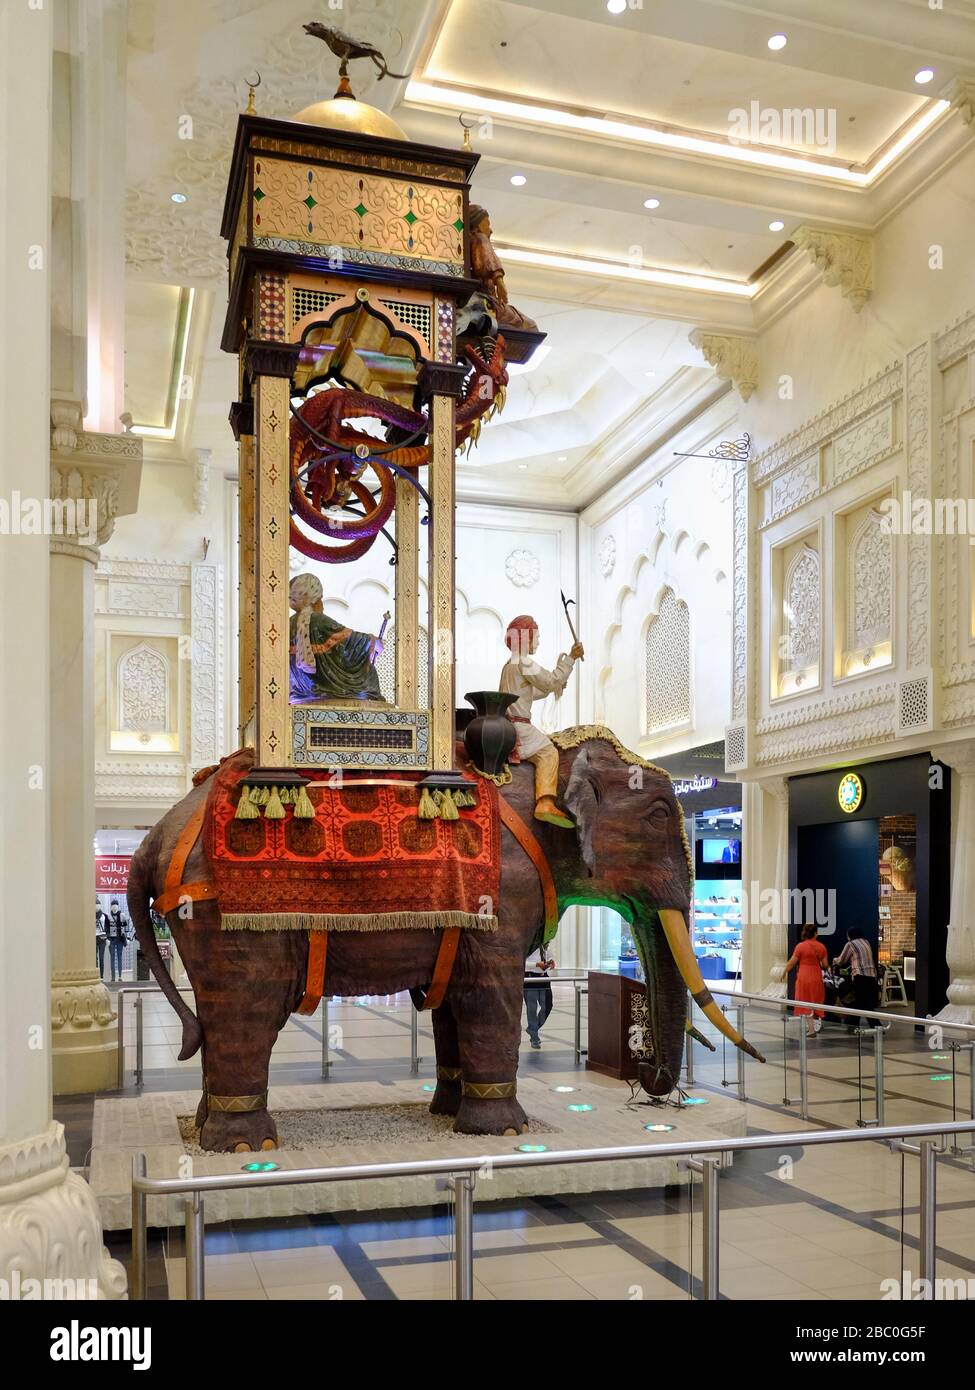 L'Orologio dell'Elefante in India Court all'interno del Centro commerciale Ibn Buttata, Dubai, Emirati Arabi Uniti. Lo splendore del periodo Mughal dell’India è chiaramente evidente in tribunale. Foto Stock